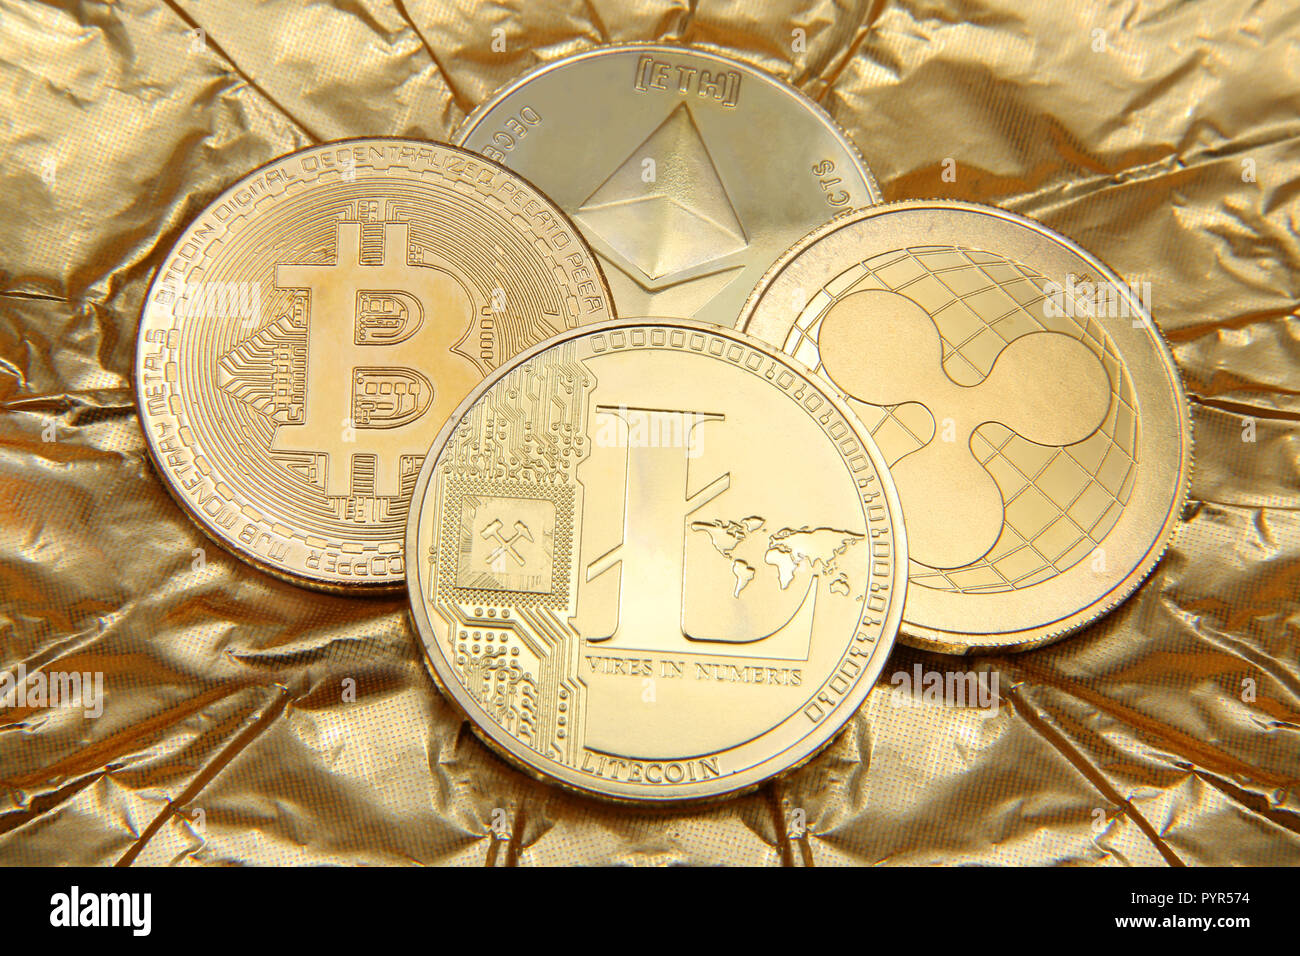 Litecoin, Ondulation, Ethereum Bitcoin et pièces d'or représentant les cryptocurrenies contre un fond d'or. Banque D'Images